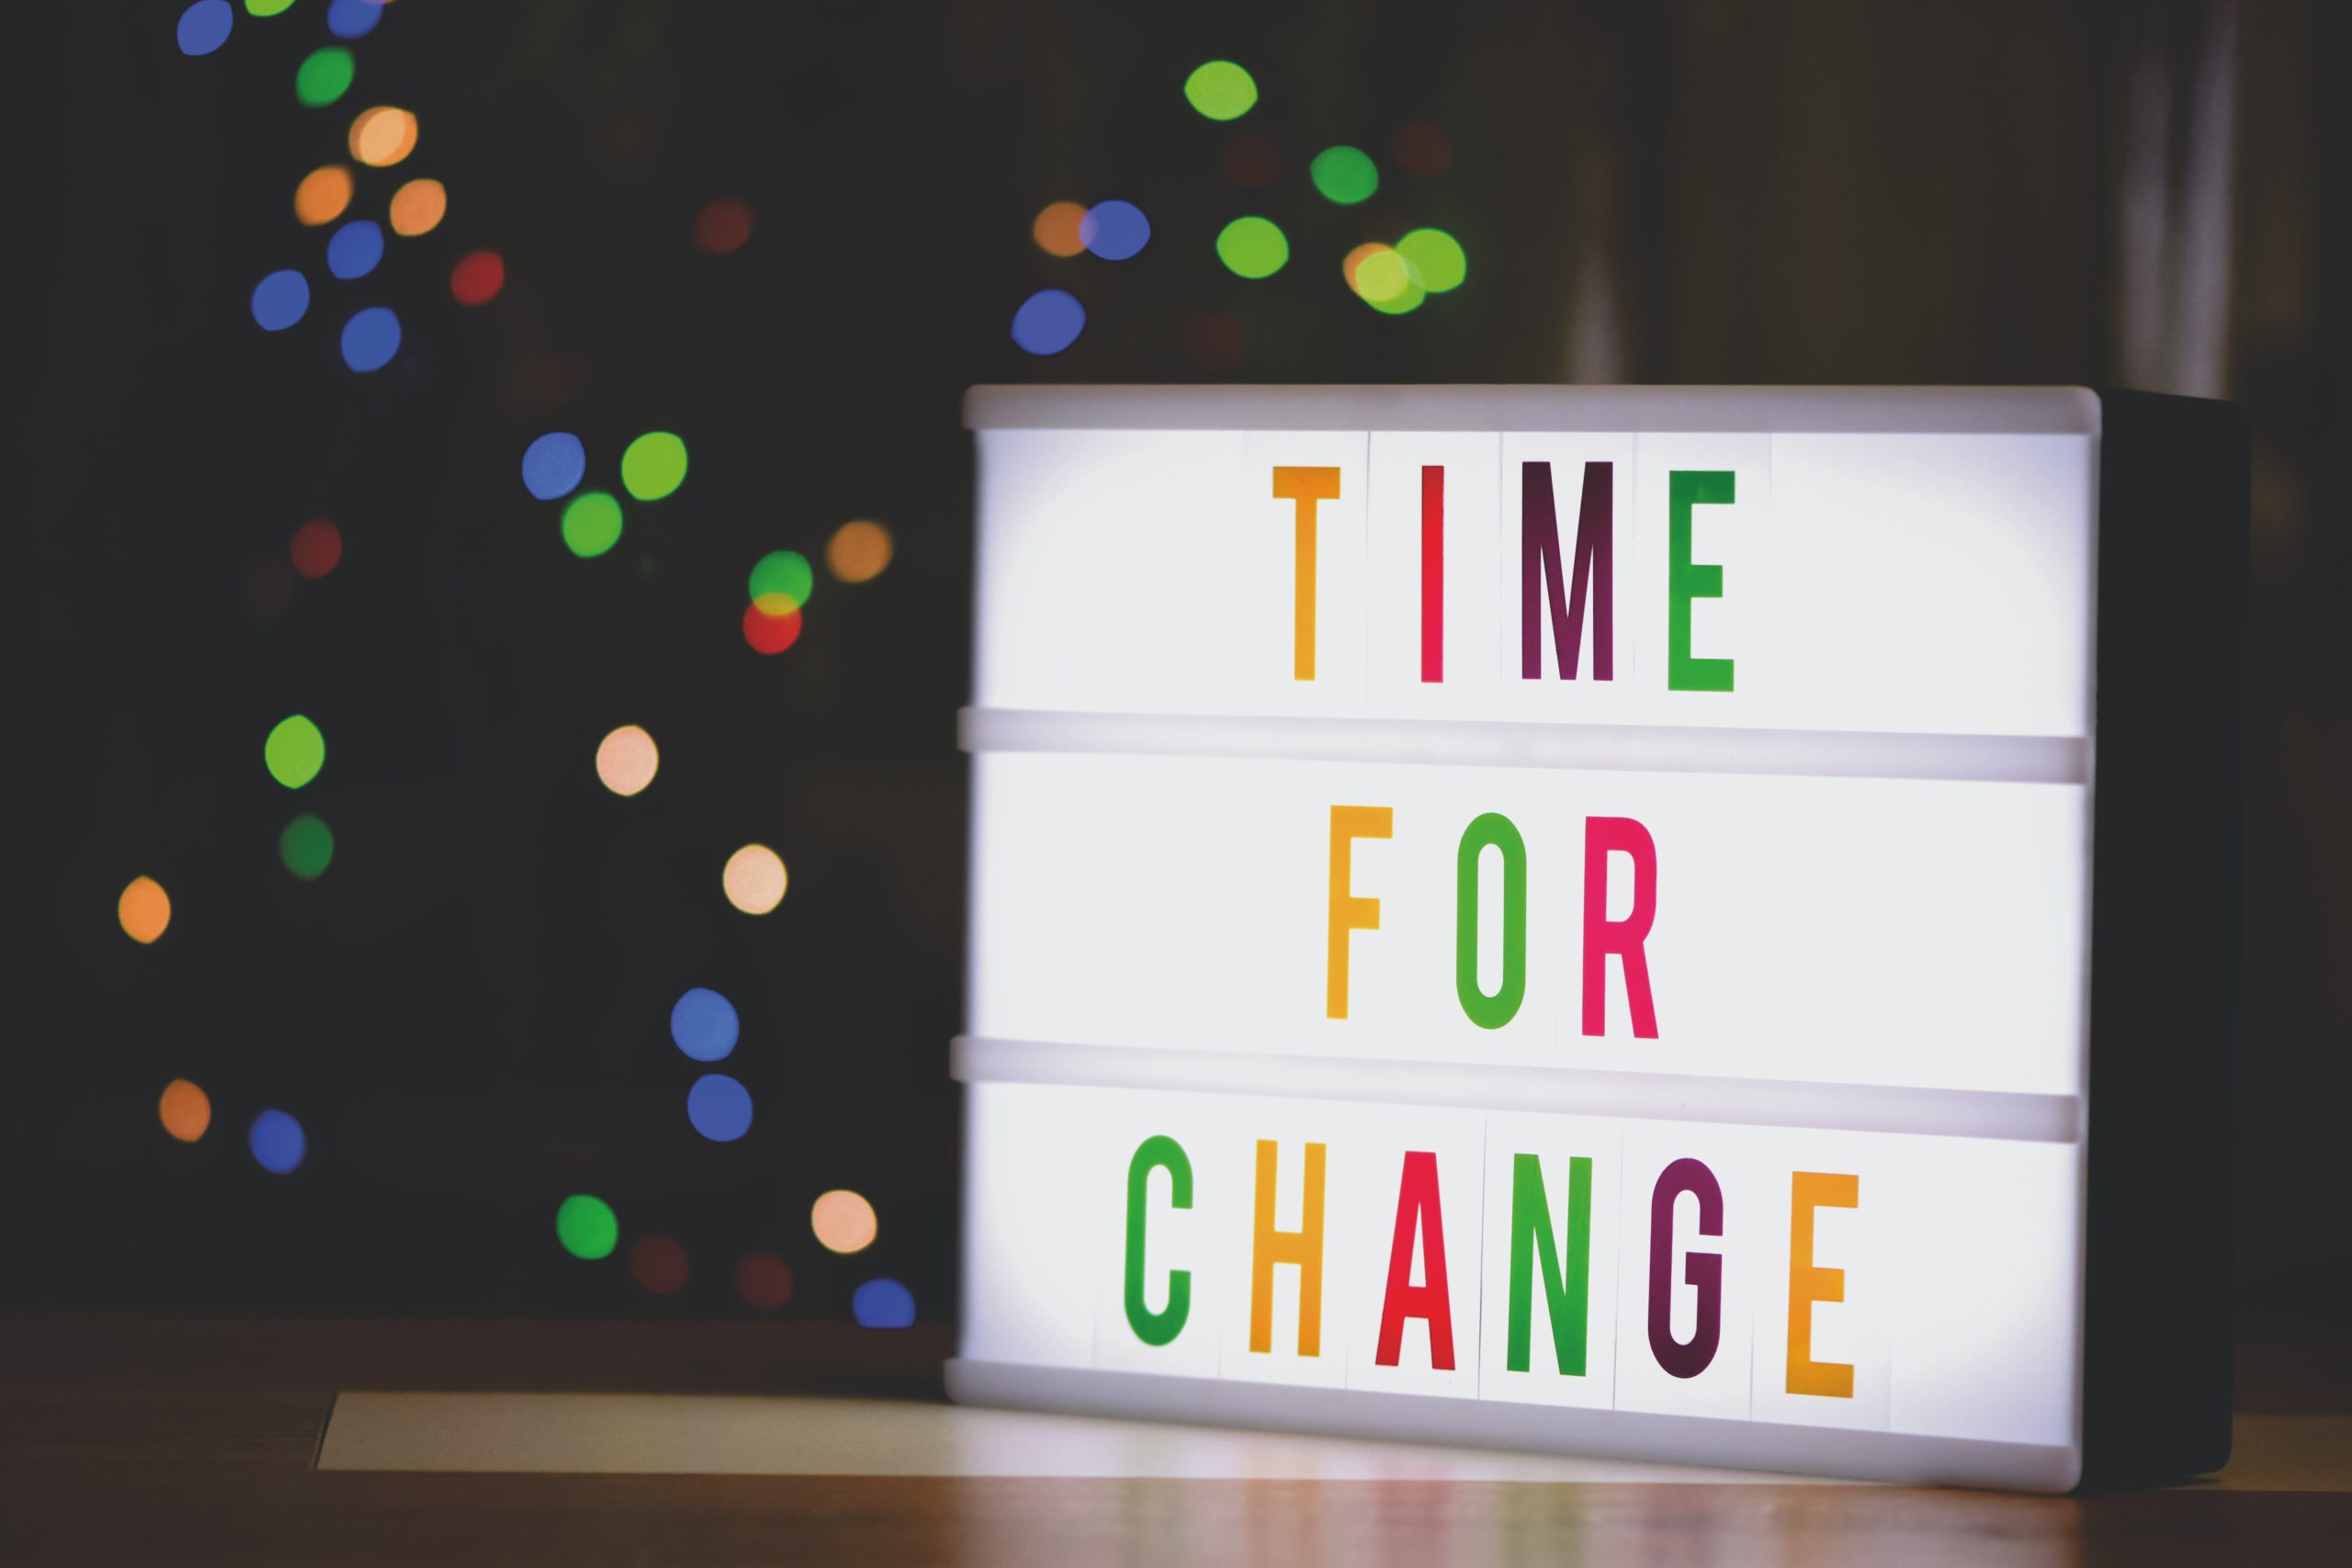 Modelo ADKAR de gestión del cambio: el cambio organizacional que empieza con las personas